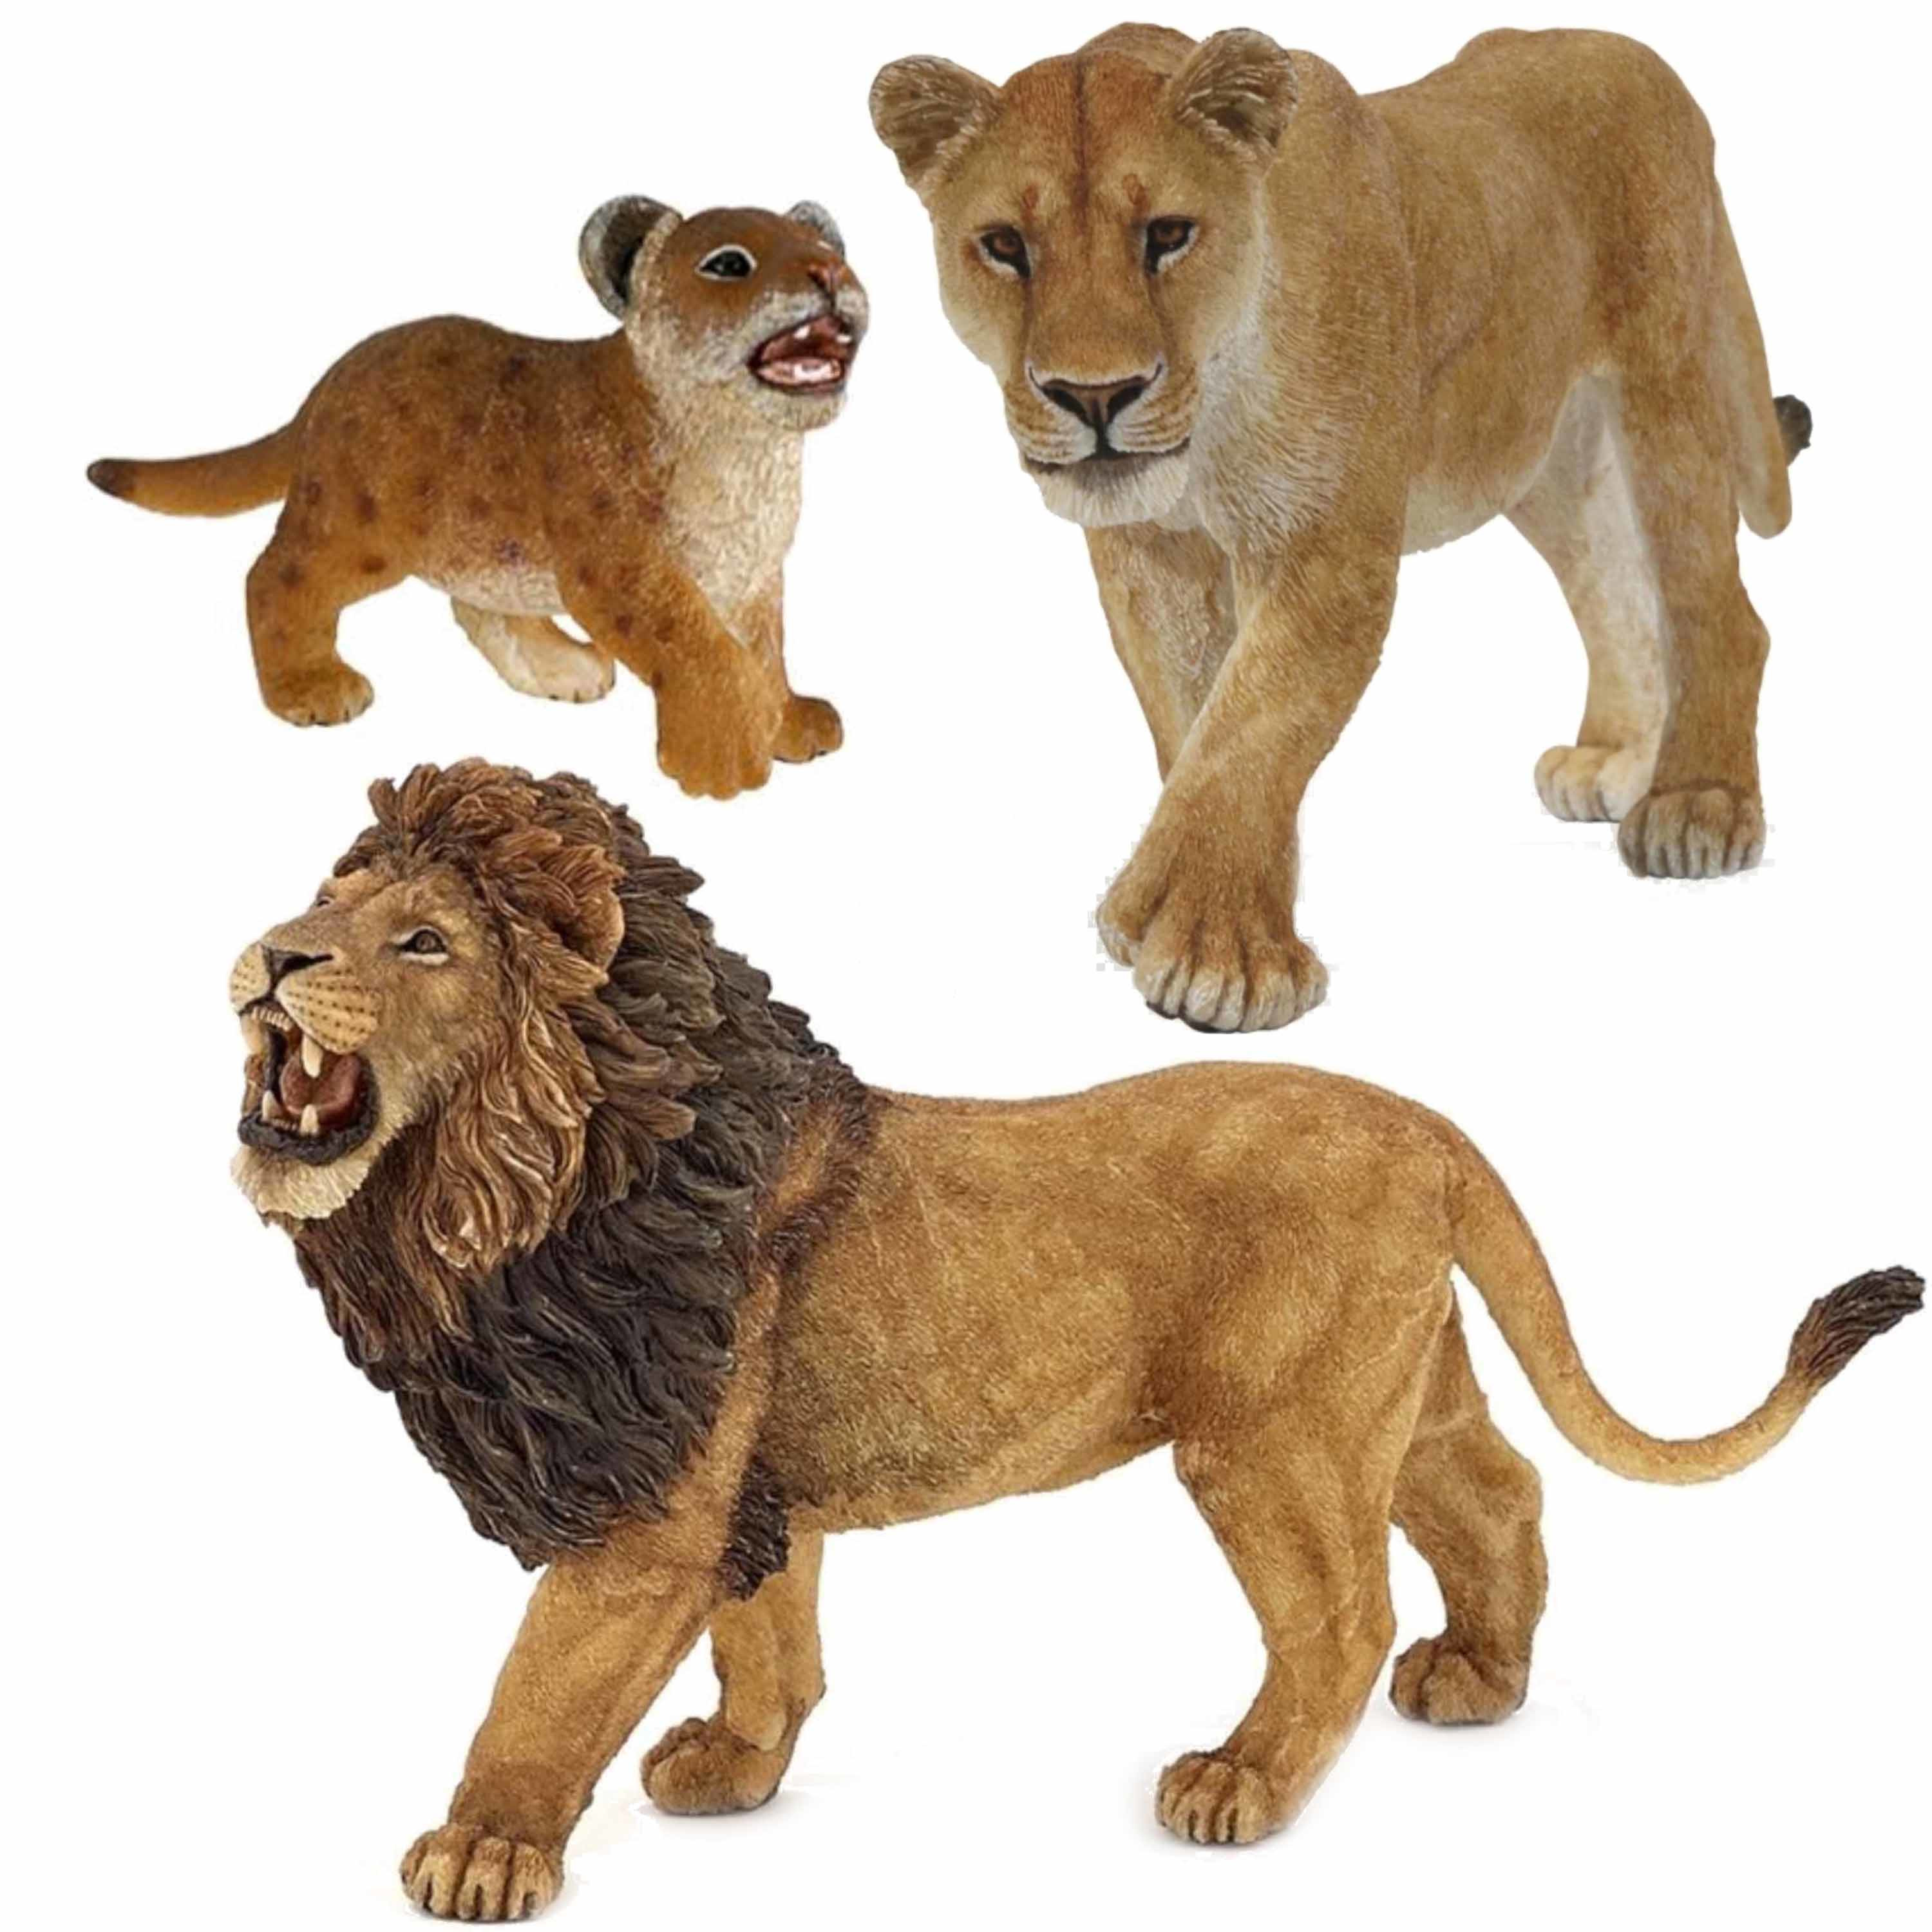 Plastic speelgoed dieren figuren setje leeuwen familie van vader-moeder en kind